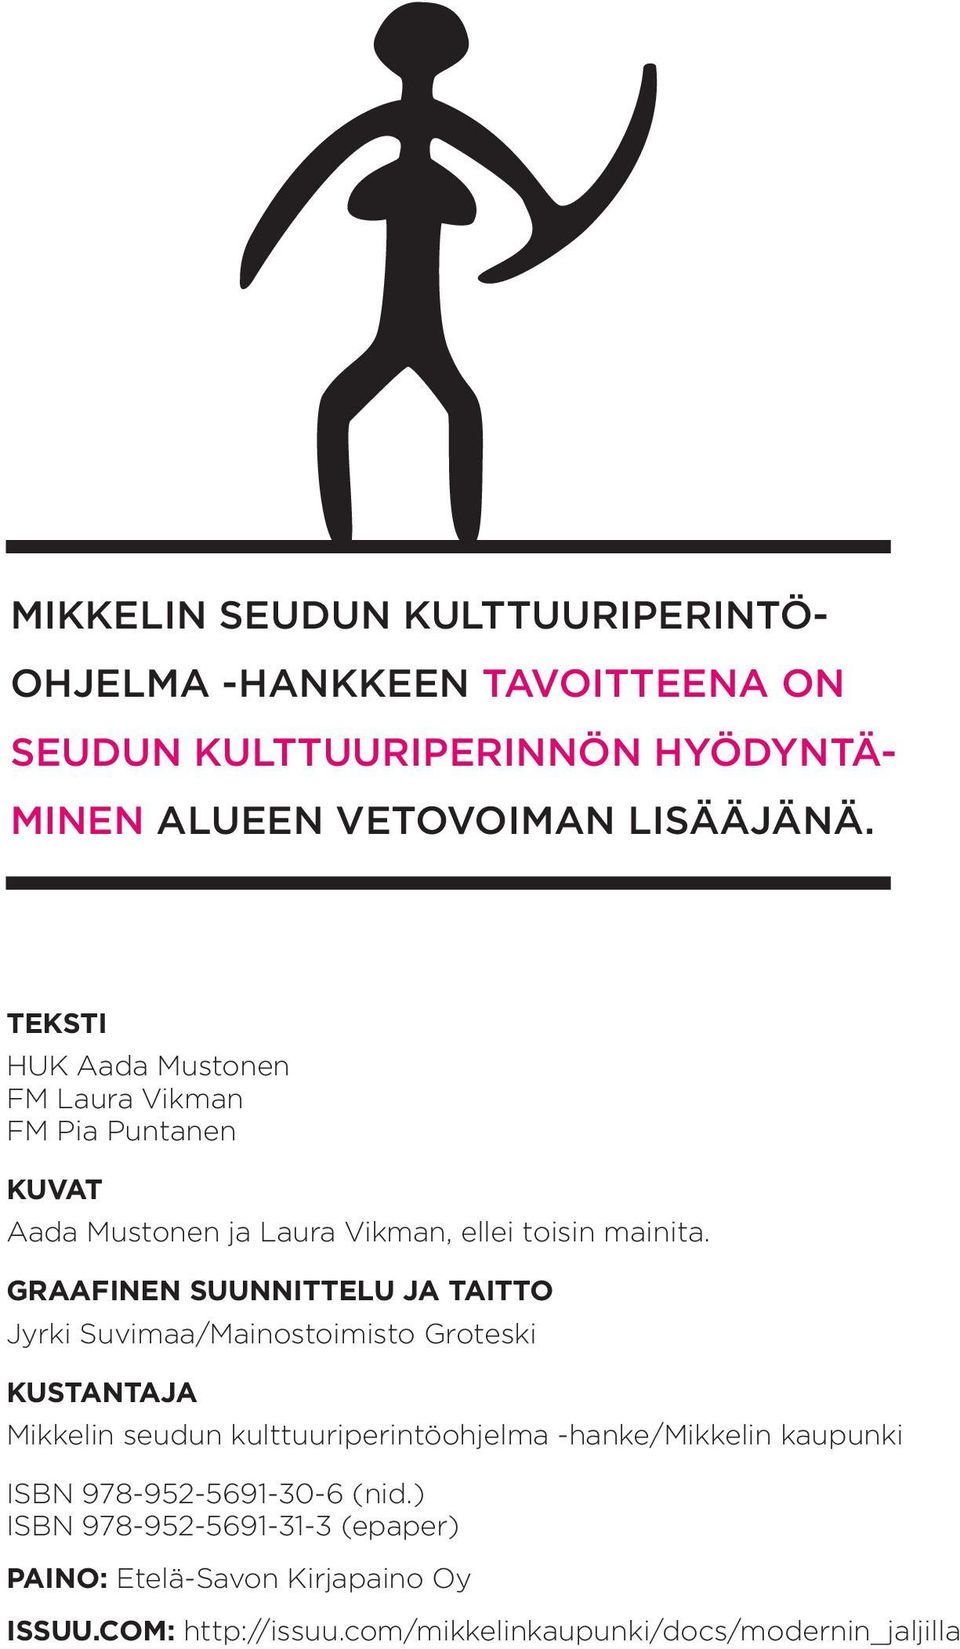 Graafinen suunnittelu ja taitto Jyrki Suvimaa/Mainostoimisto Groteski Kustantaja Mikkelin seudun kulttuuriperintöohjelma -hanke/mikkelin